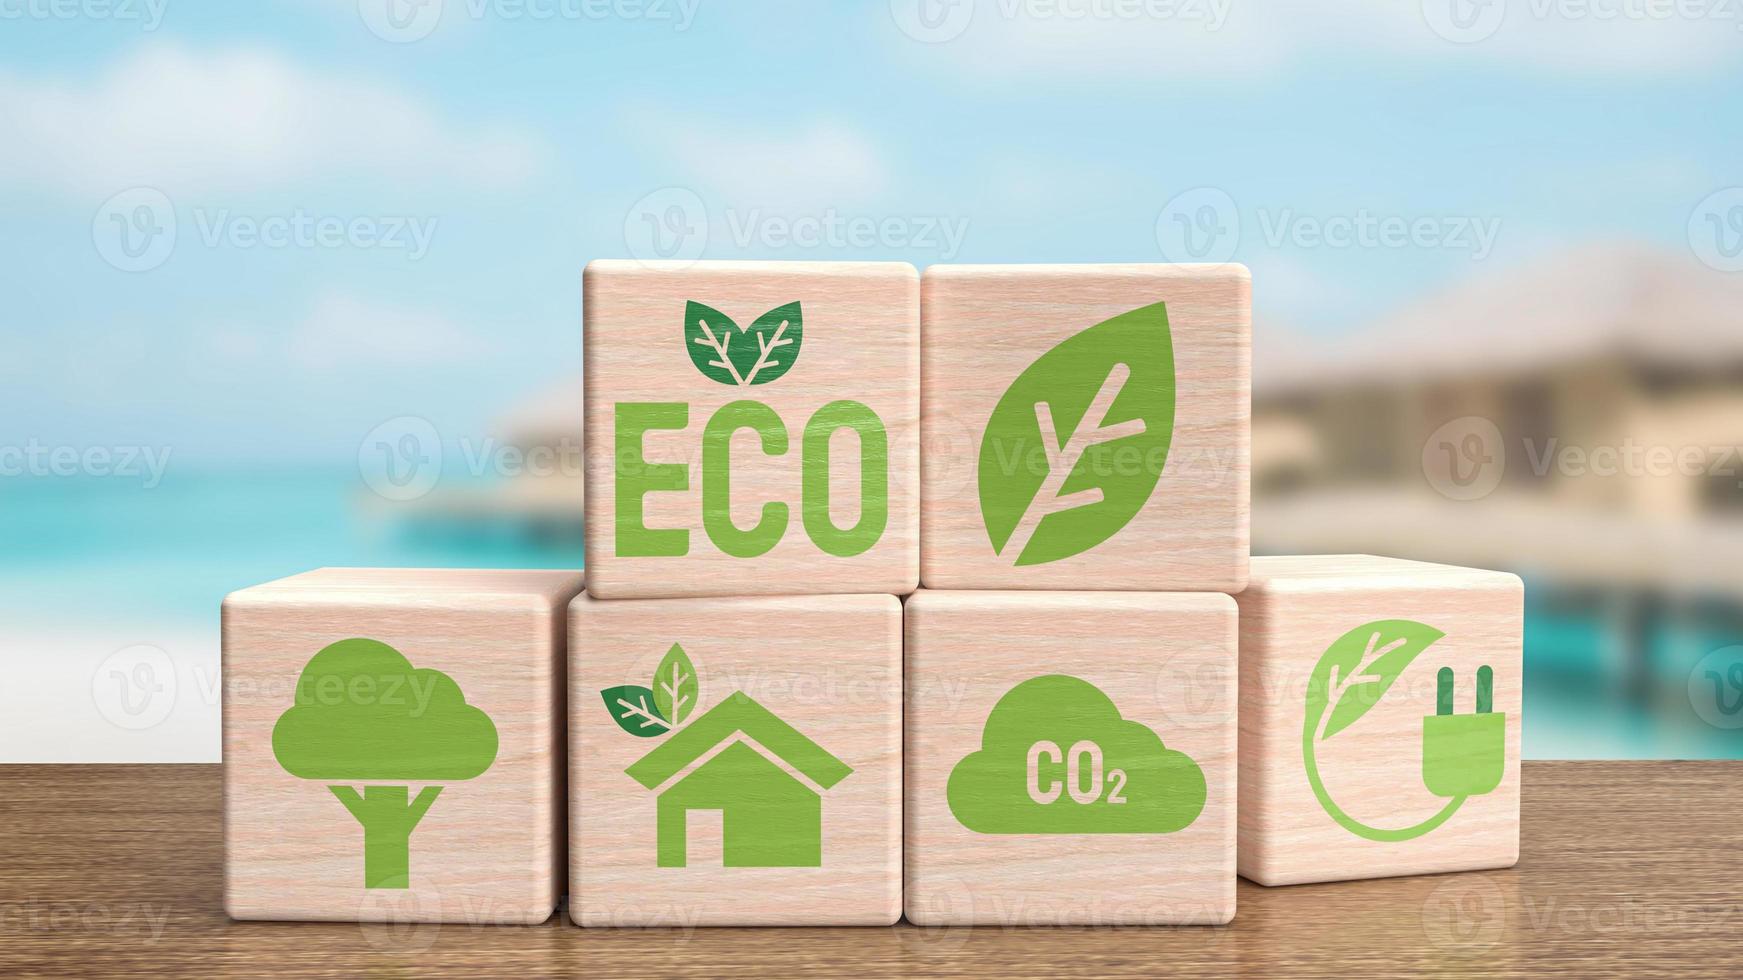 l'icona dell'ecologia sul cubo di legno per il rendering 3d di concetto ecologico o naturale foto